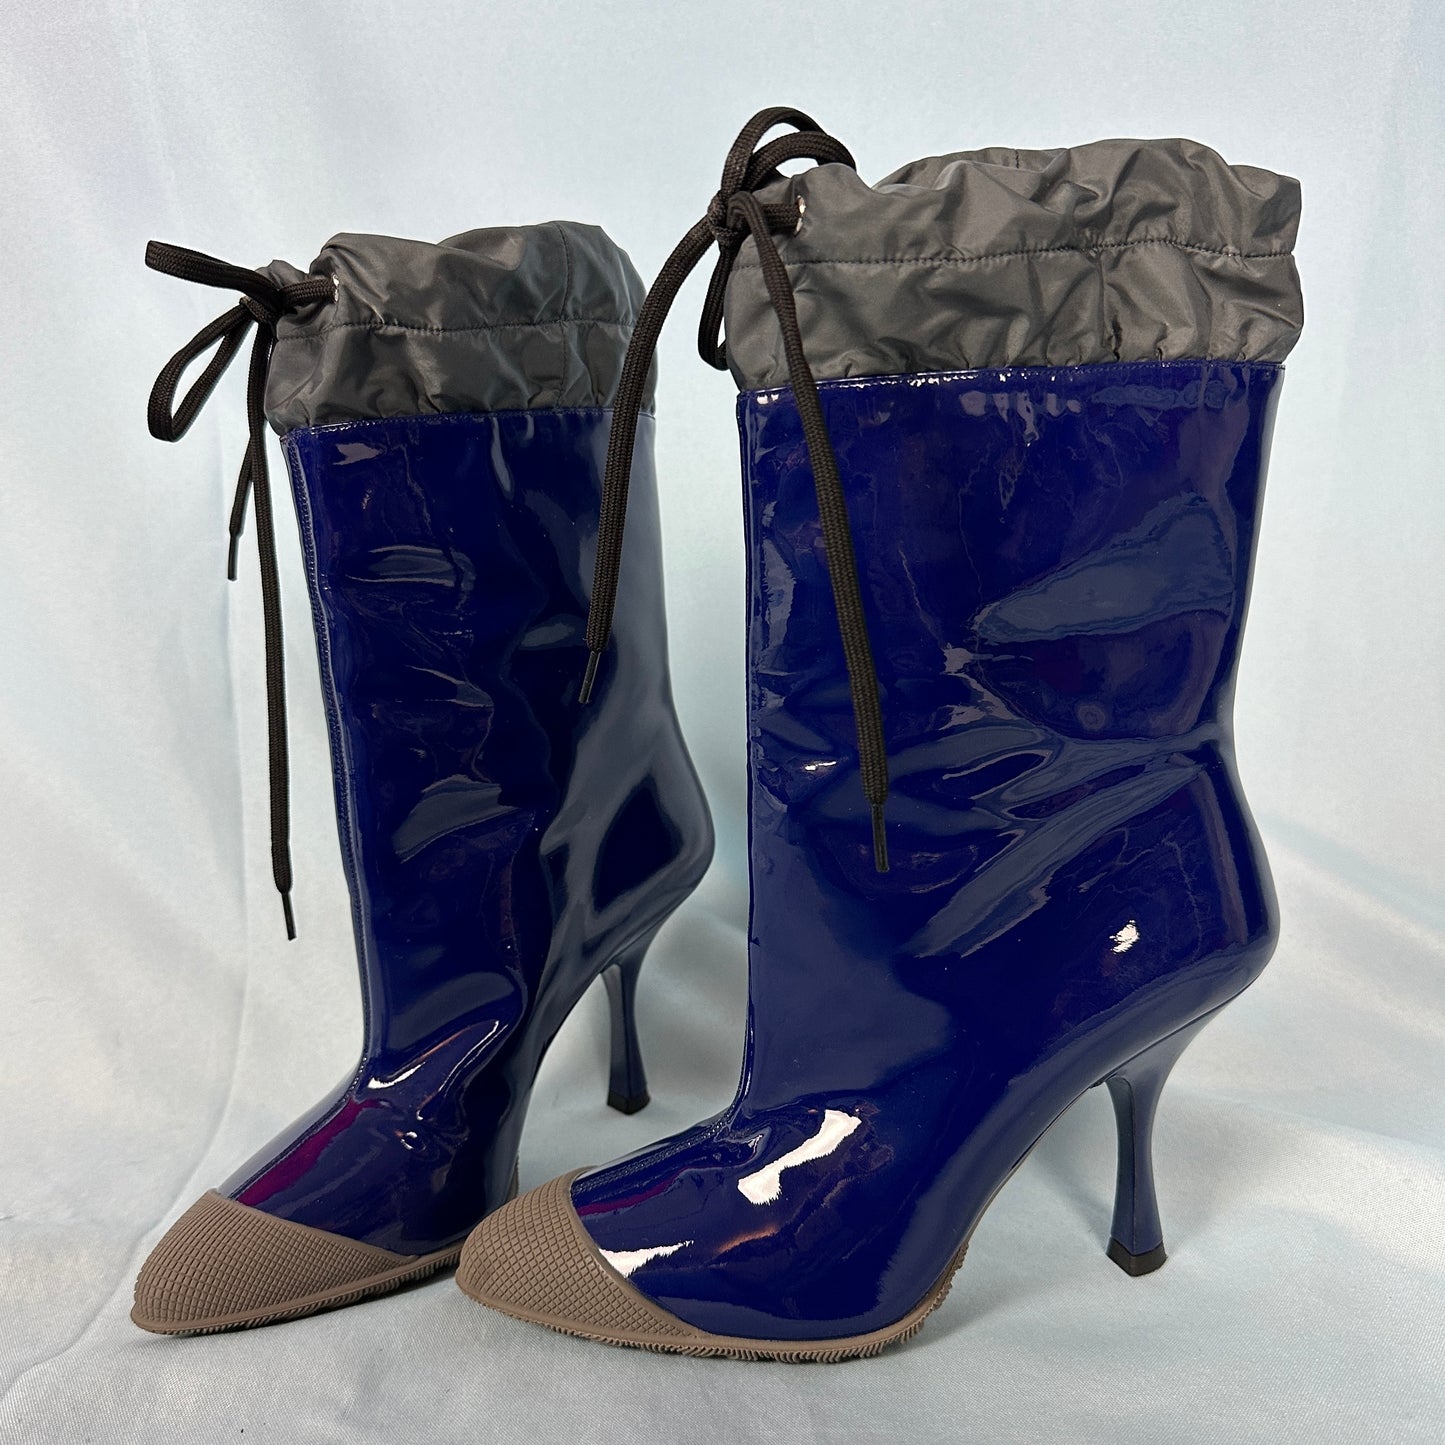 Miu Miu Fall 2014 Blue Patent Heeled Rain Boots